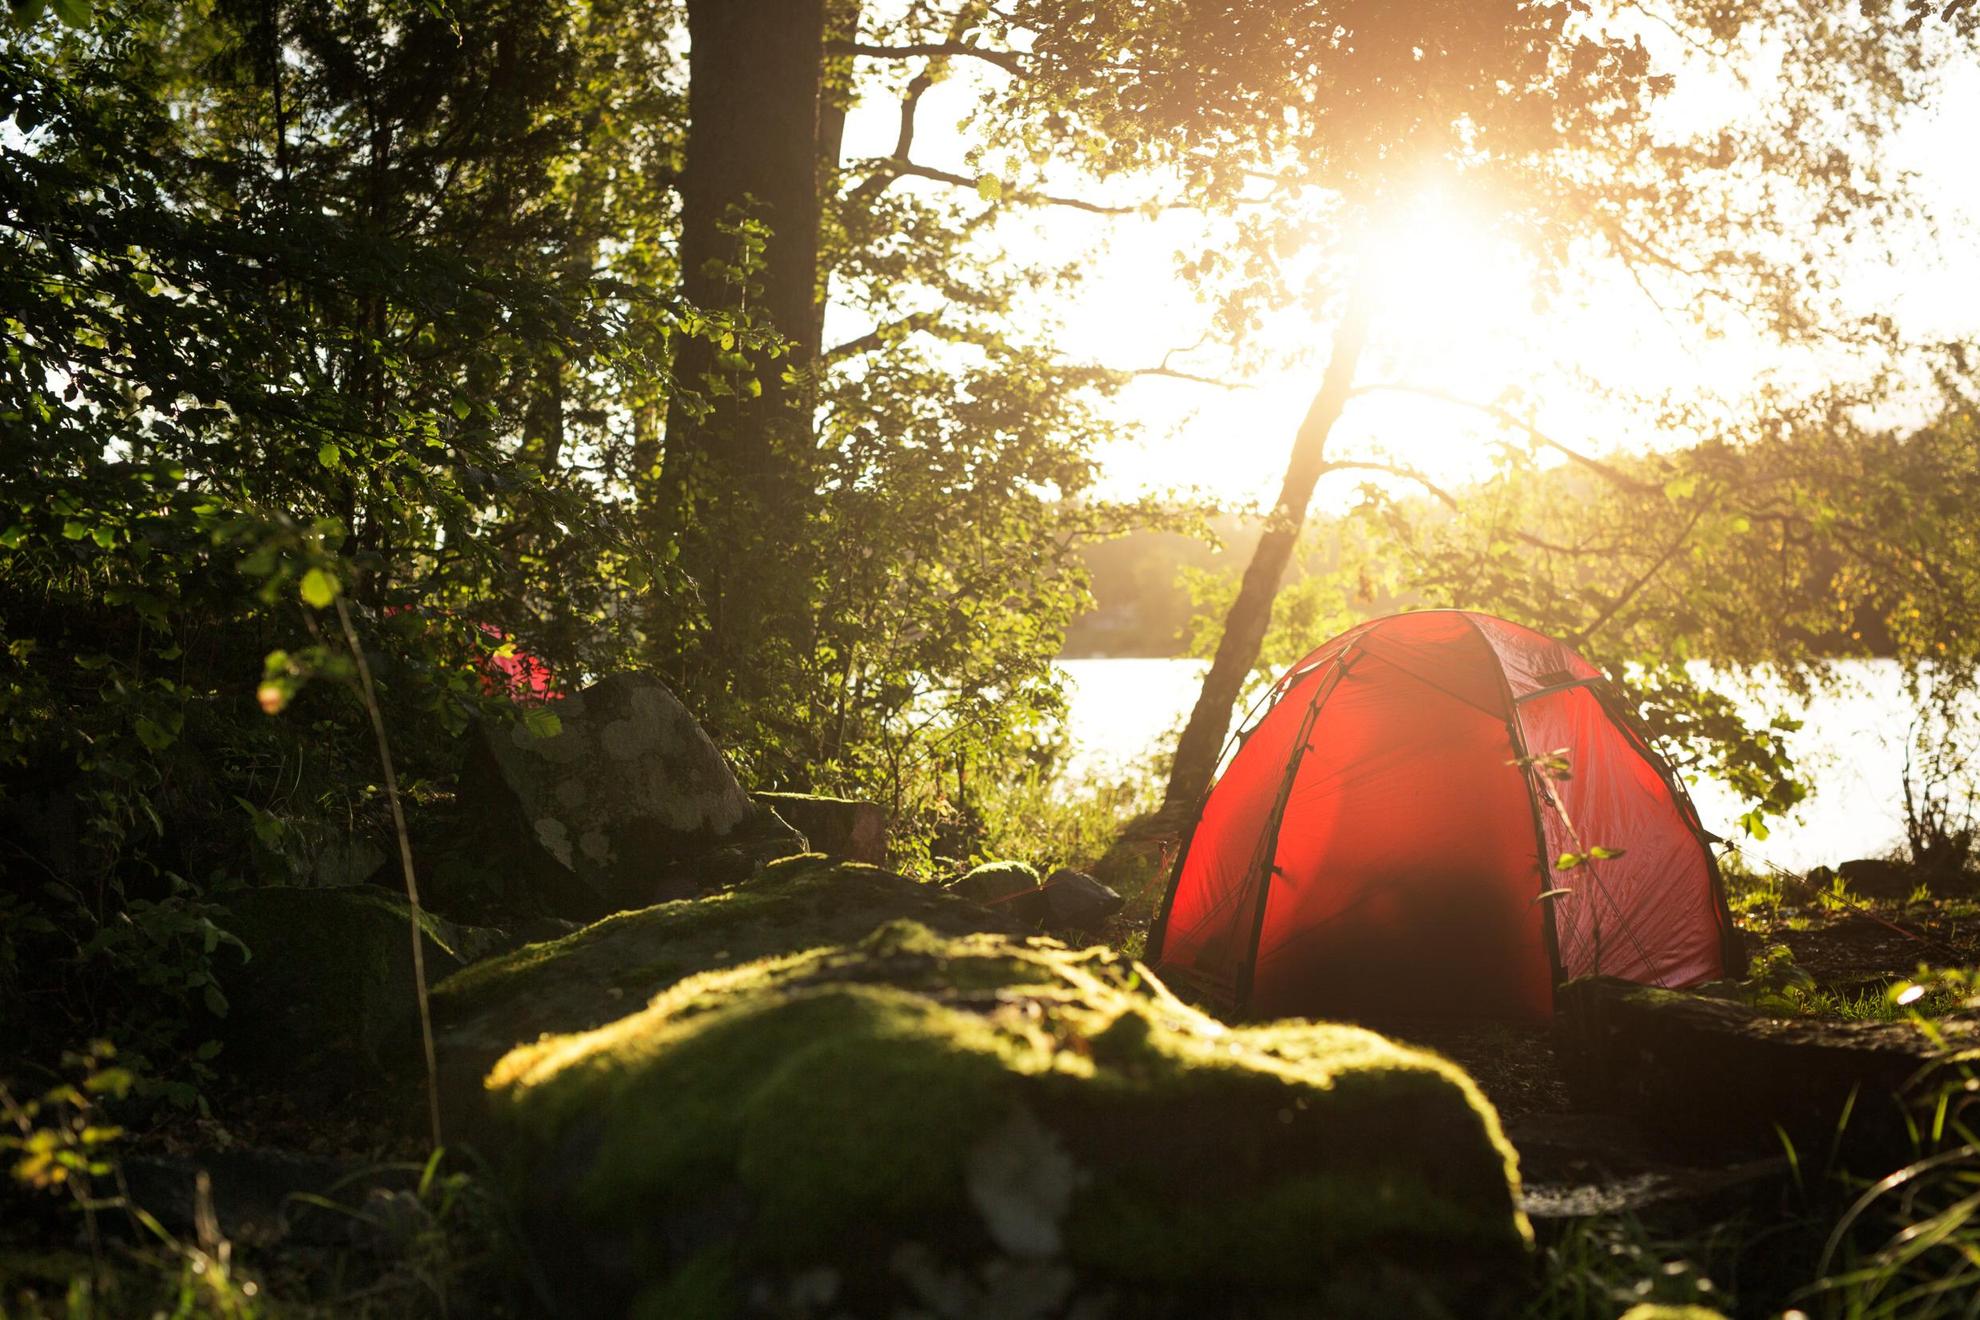 Am bewaldeten Ufer eines Sees steht ein rotes Iglu-Zelt